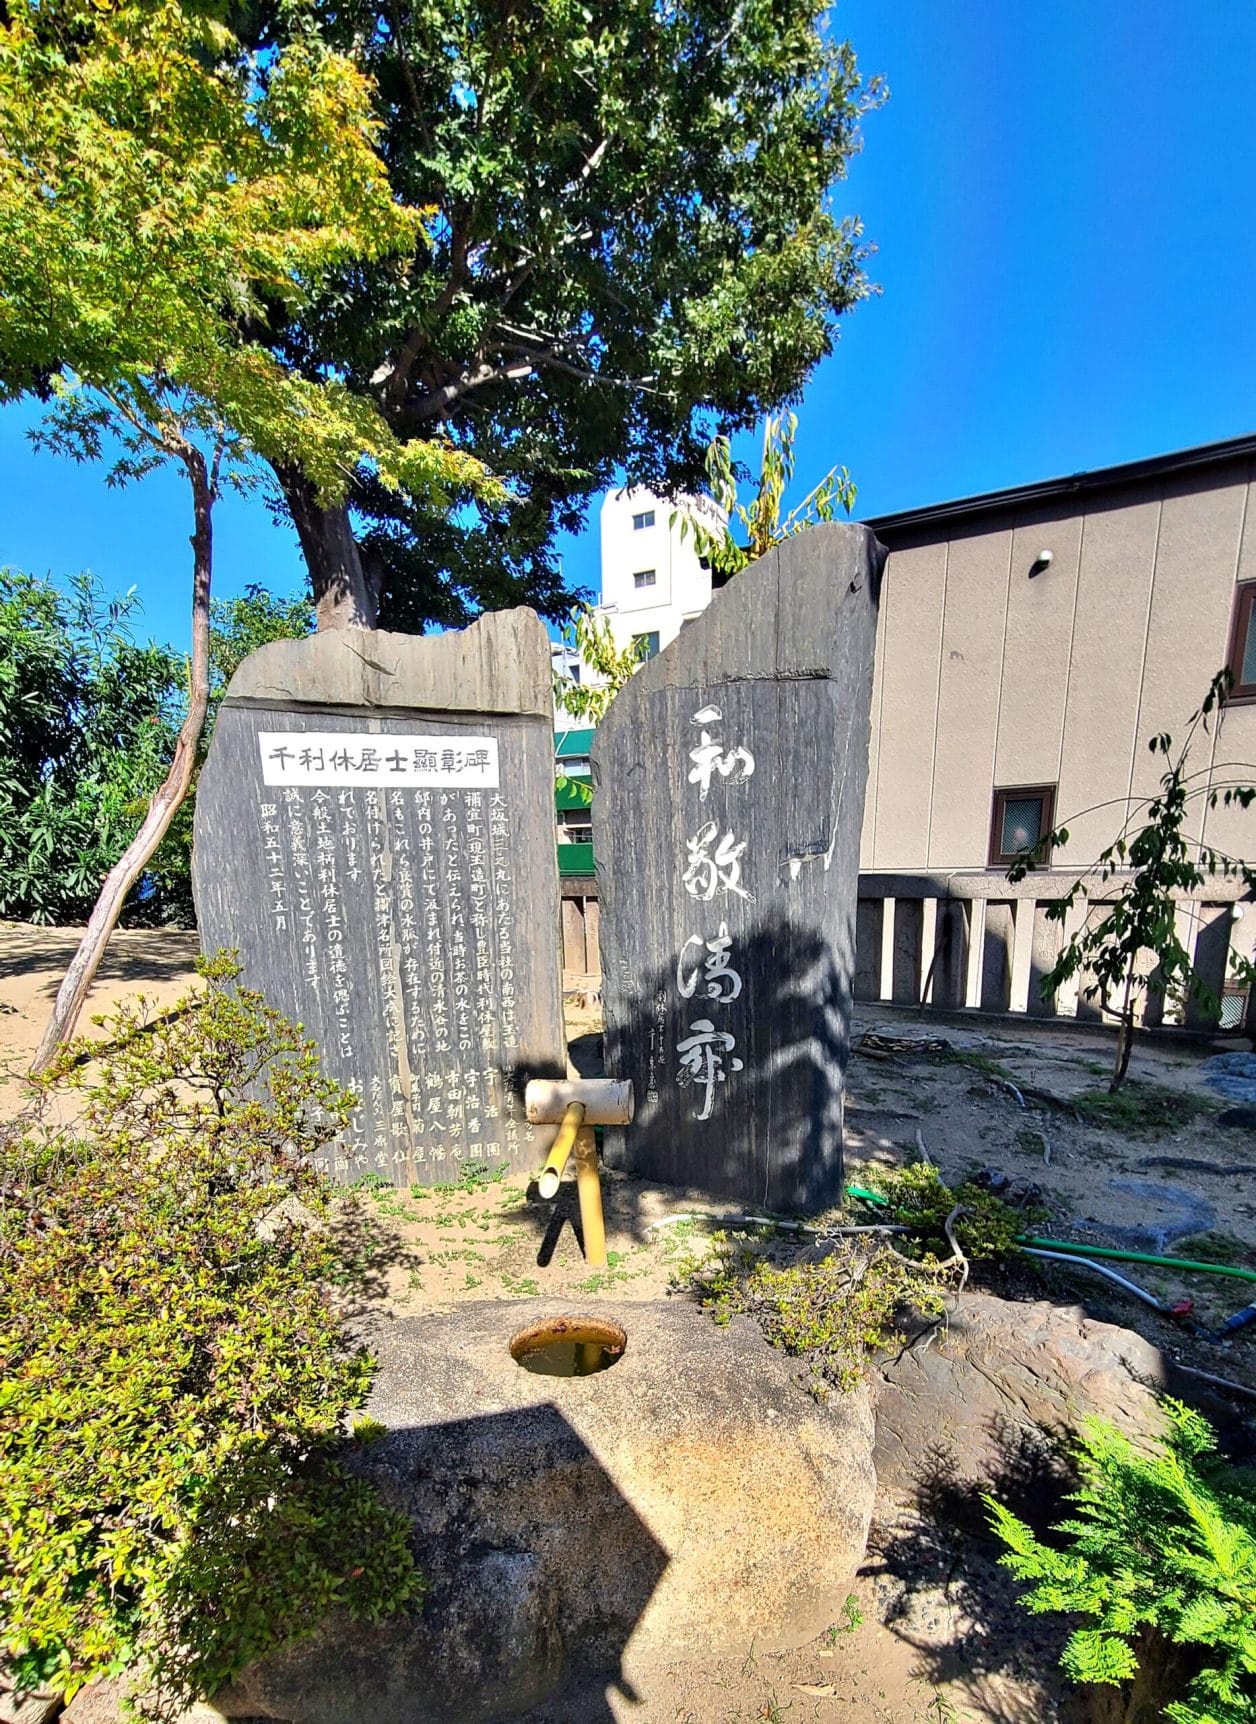 大阪の玉造稲荷神社の千利休居士顕彰